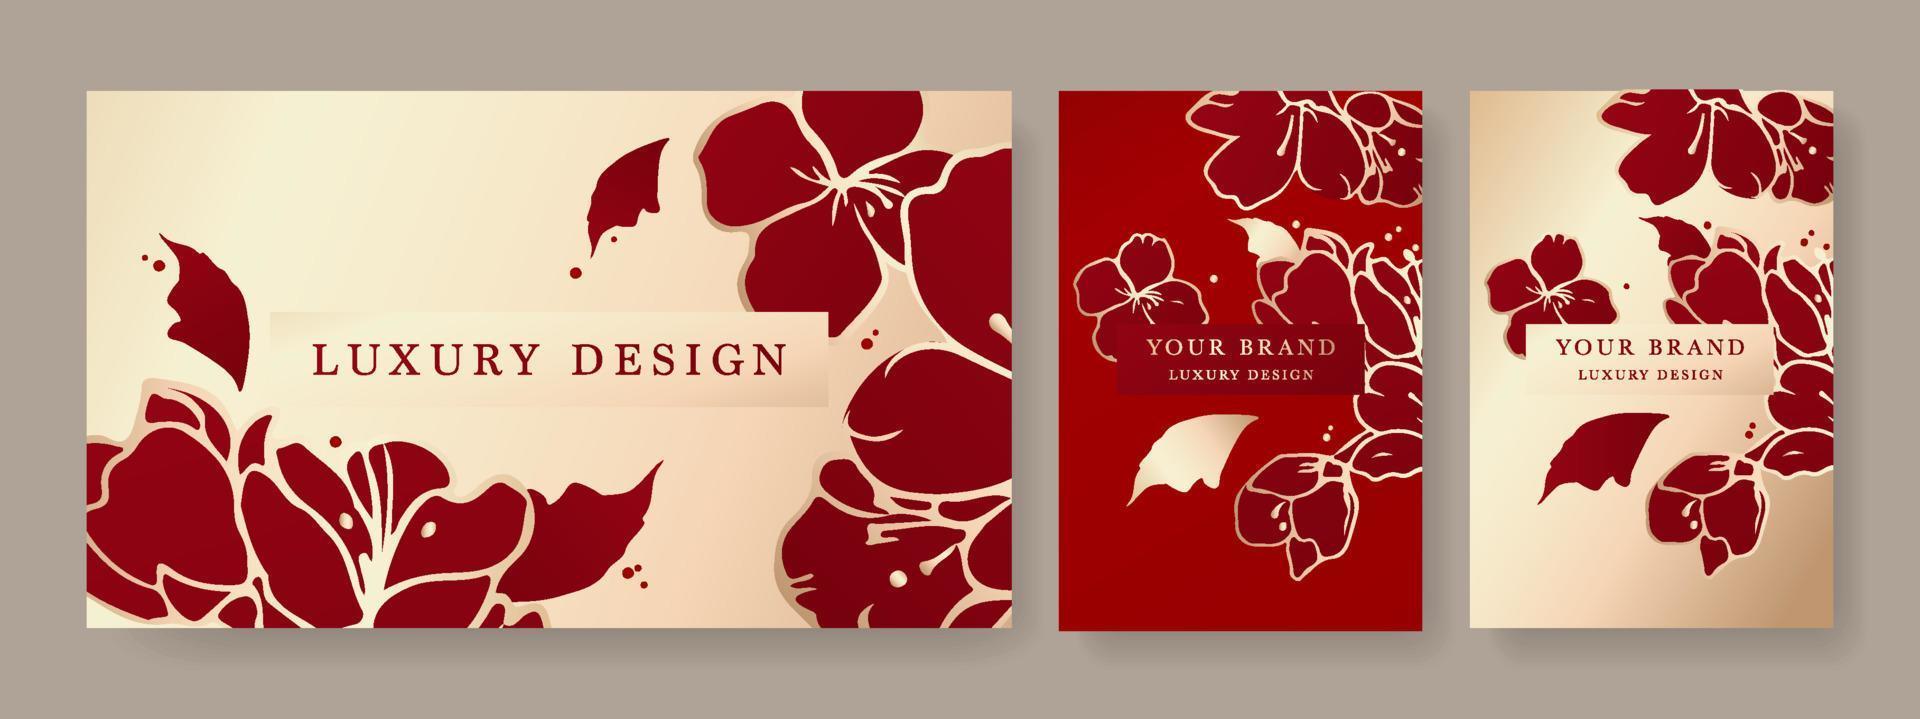 Luxusdesign auf rotem und weißem Hintergrund, Rahmendesign mit goldenem Blumenmuster. Luxus-Premium-Hintergrundmuster für Menü, Elite-Verkauf, Luxus-Einladungsvorlage, Luxus-Gutschein. vektor